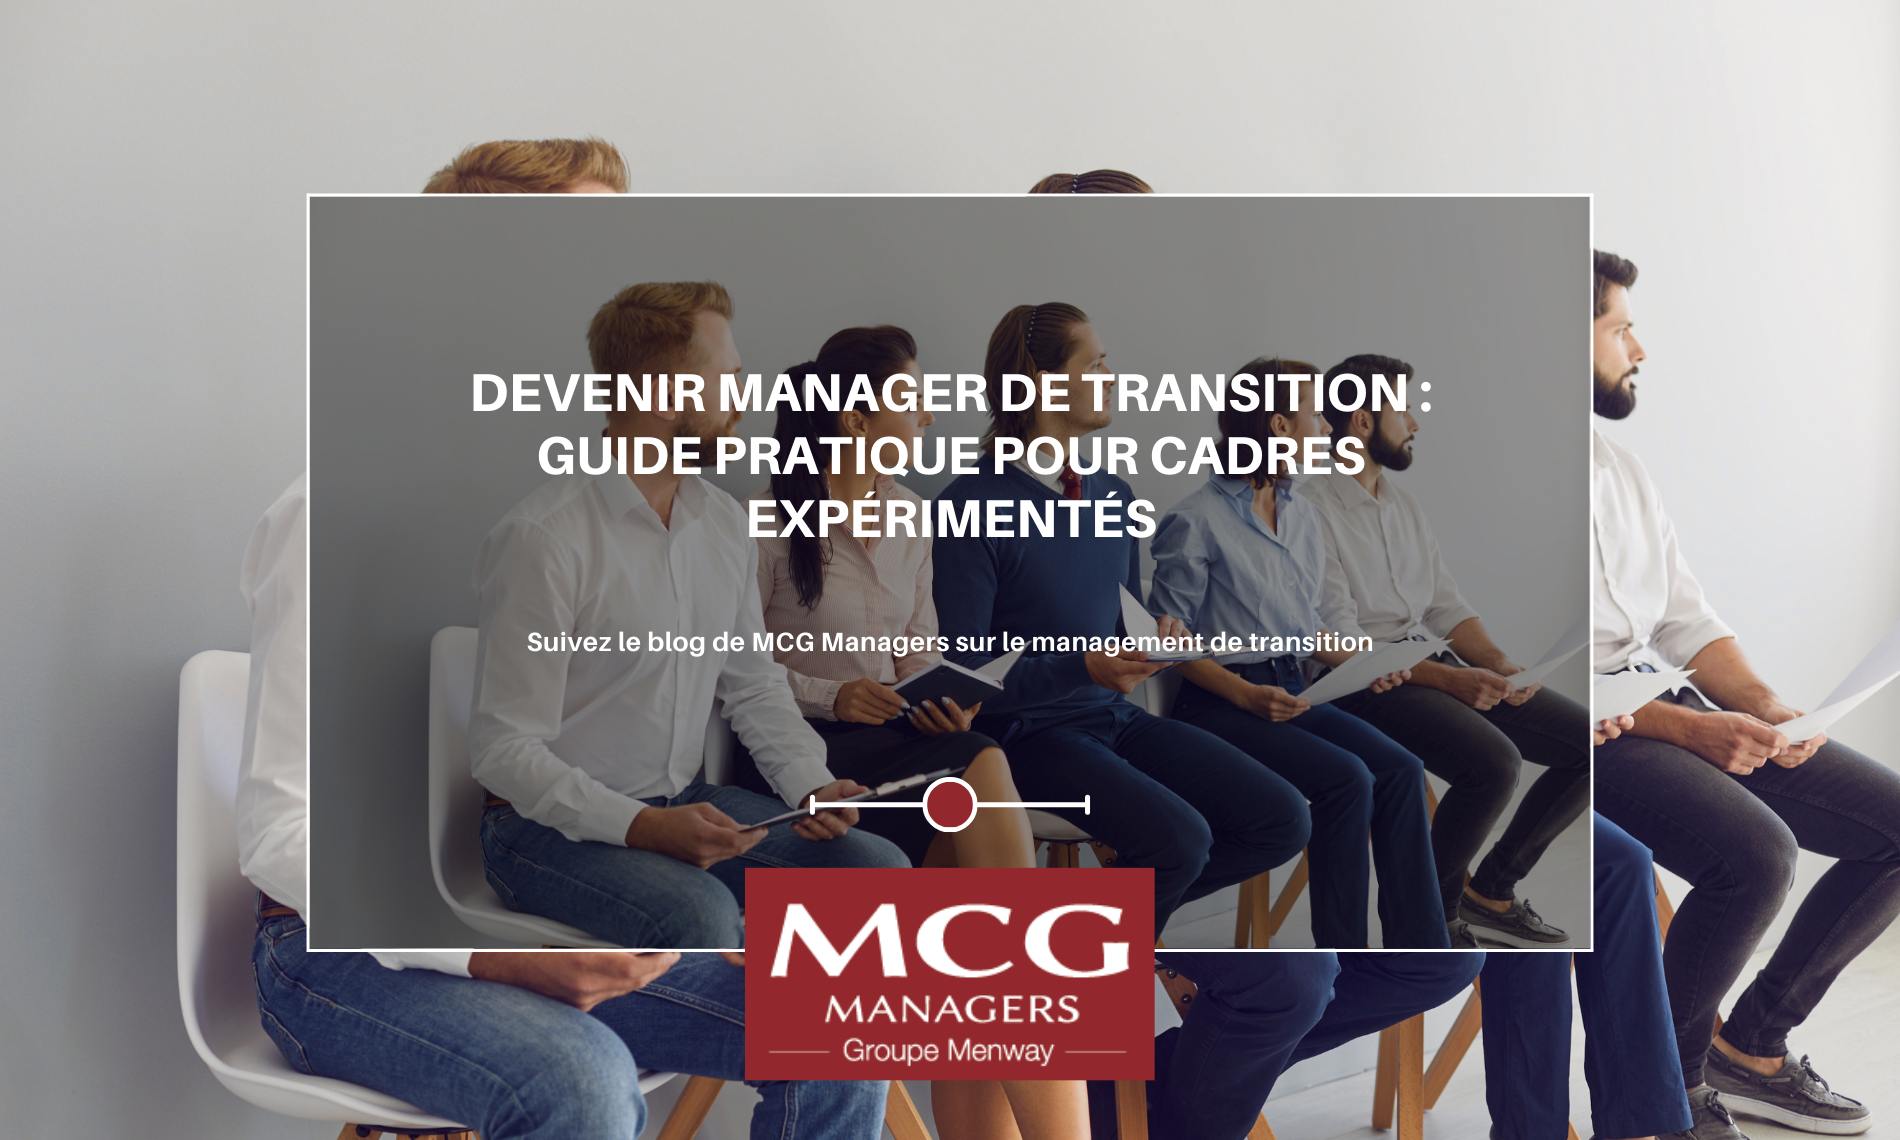 Devenir Manager de Transition : Guide pratique pour cadres expérimentés